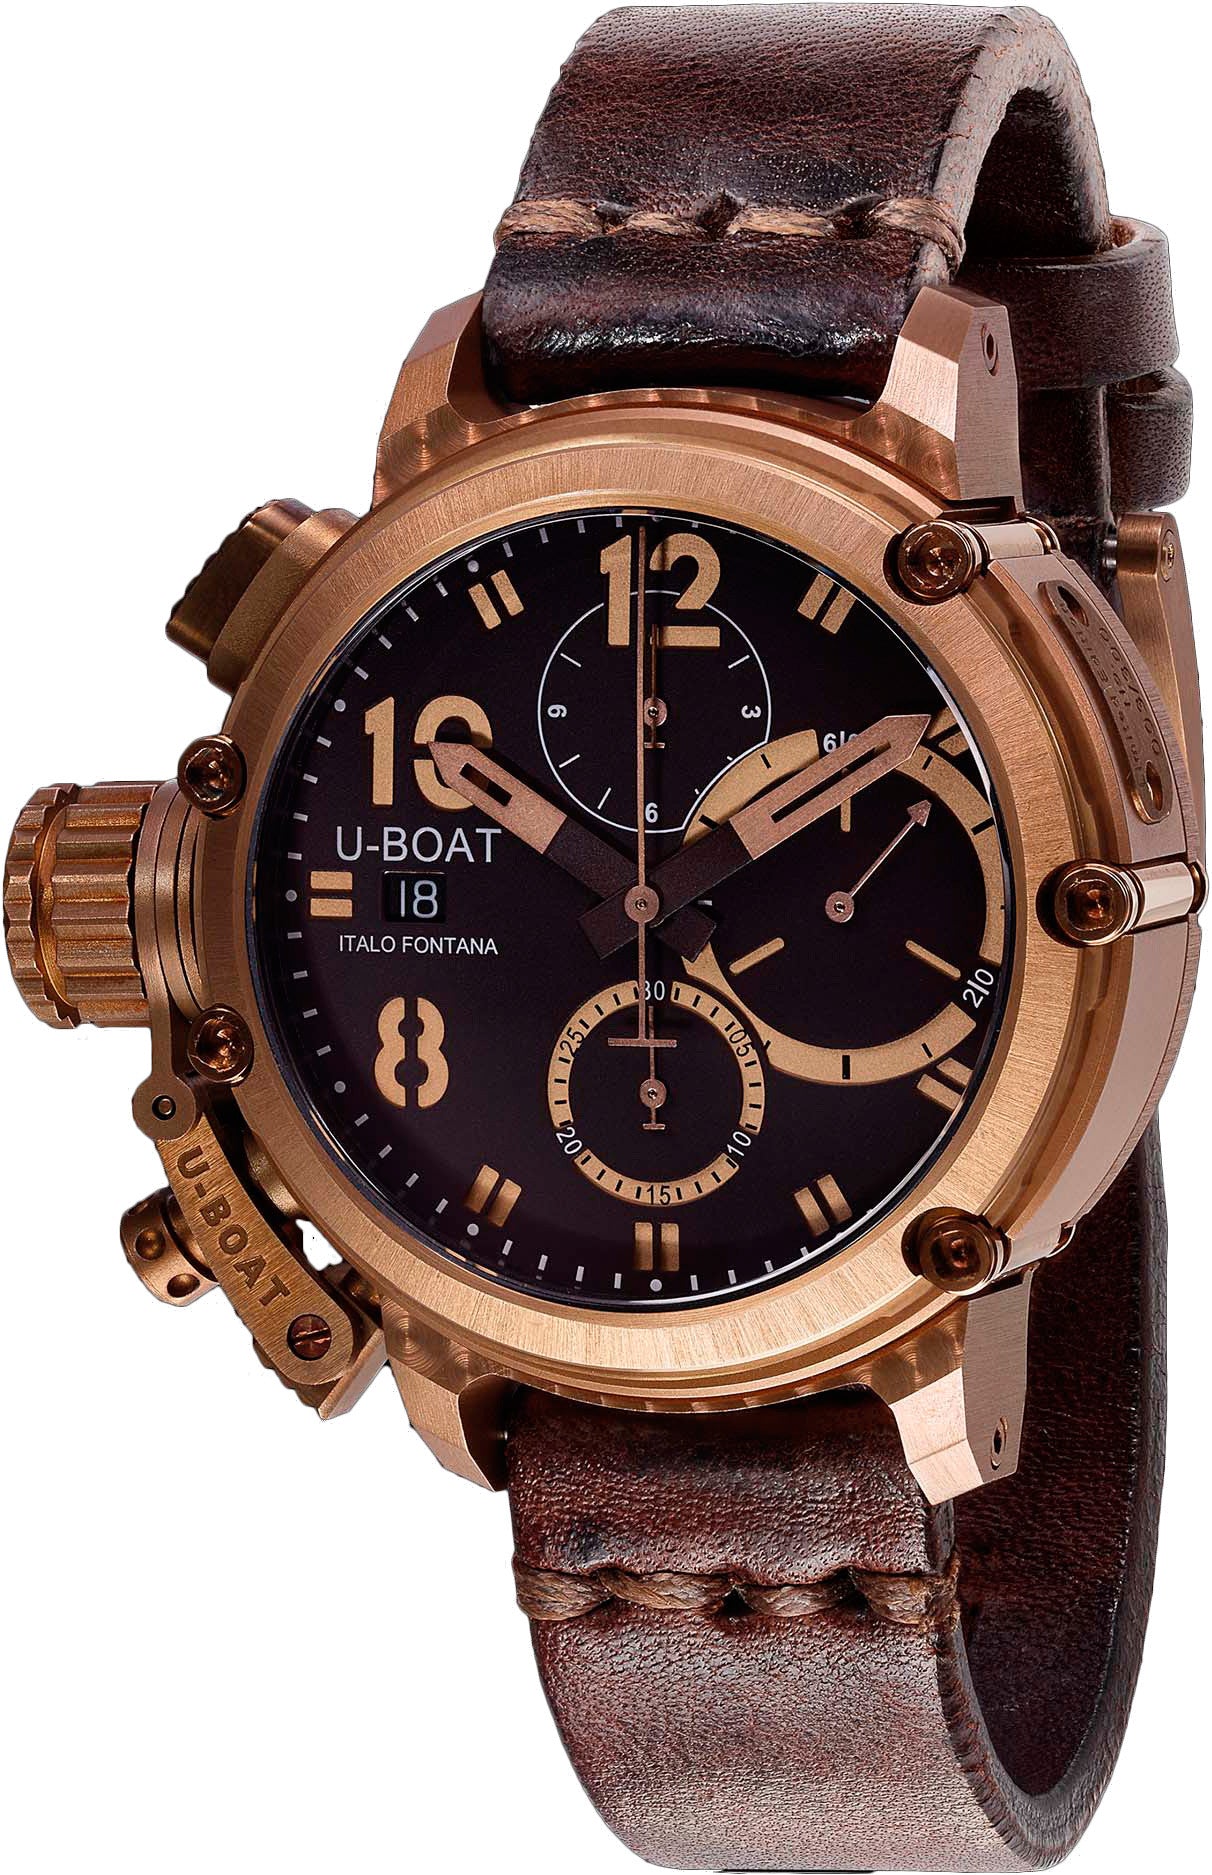 UBoat Watch Chimera Bronze Chrono Limited Edition 8014 Watch Jura